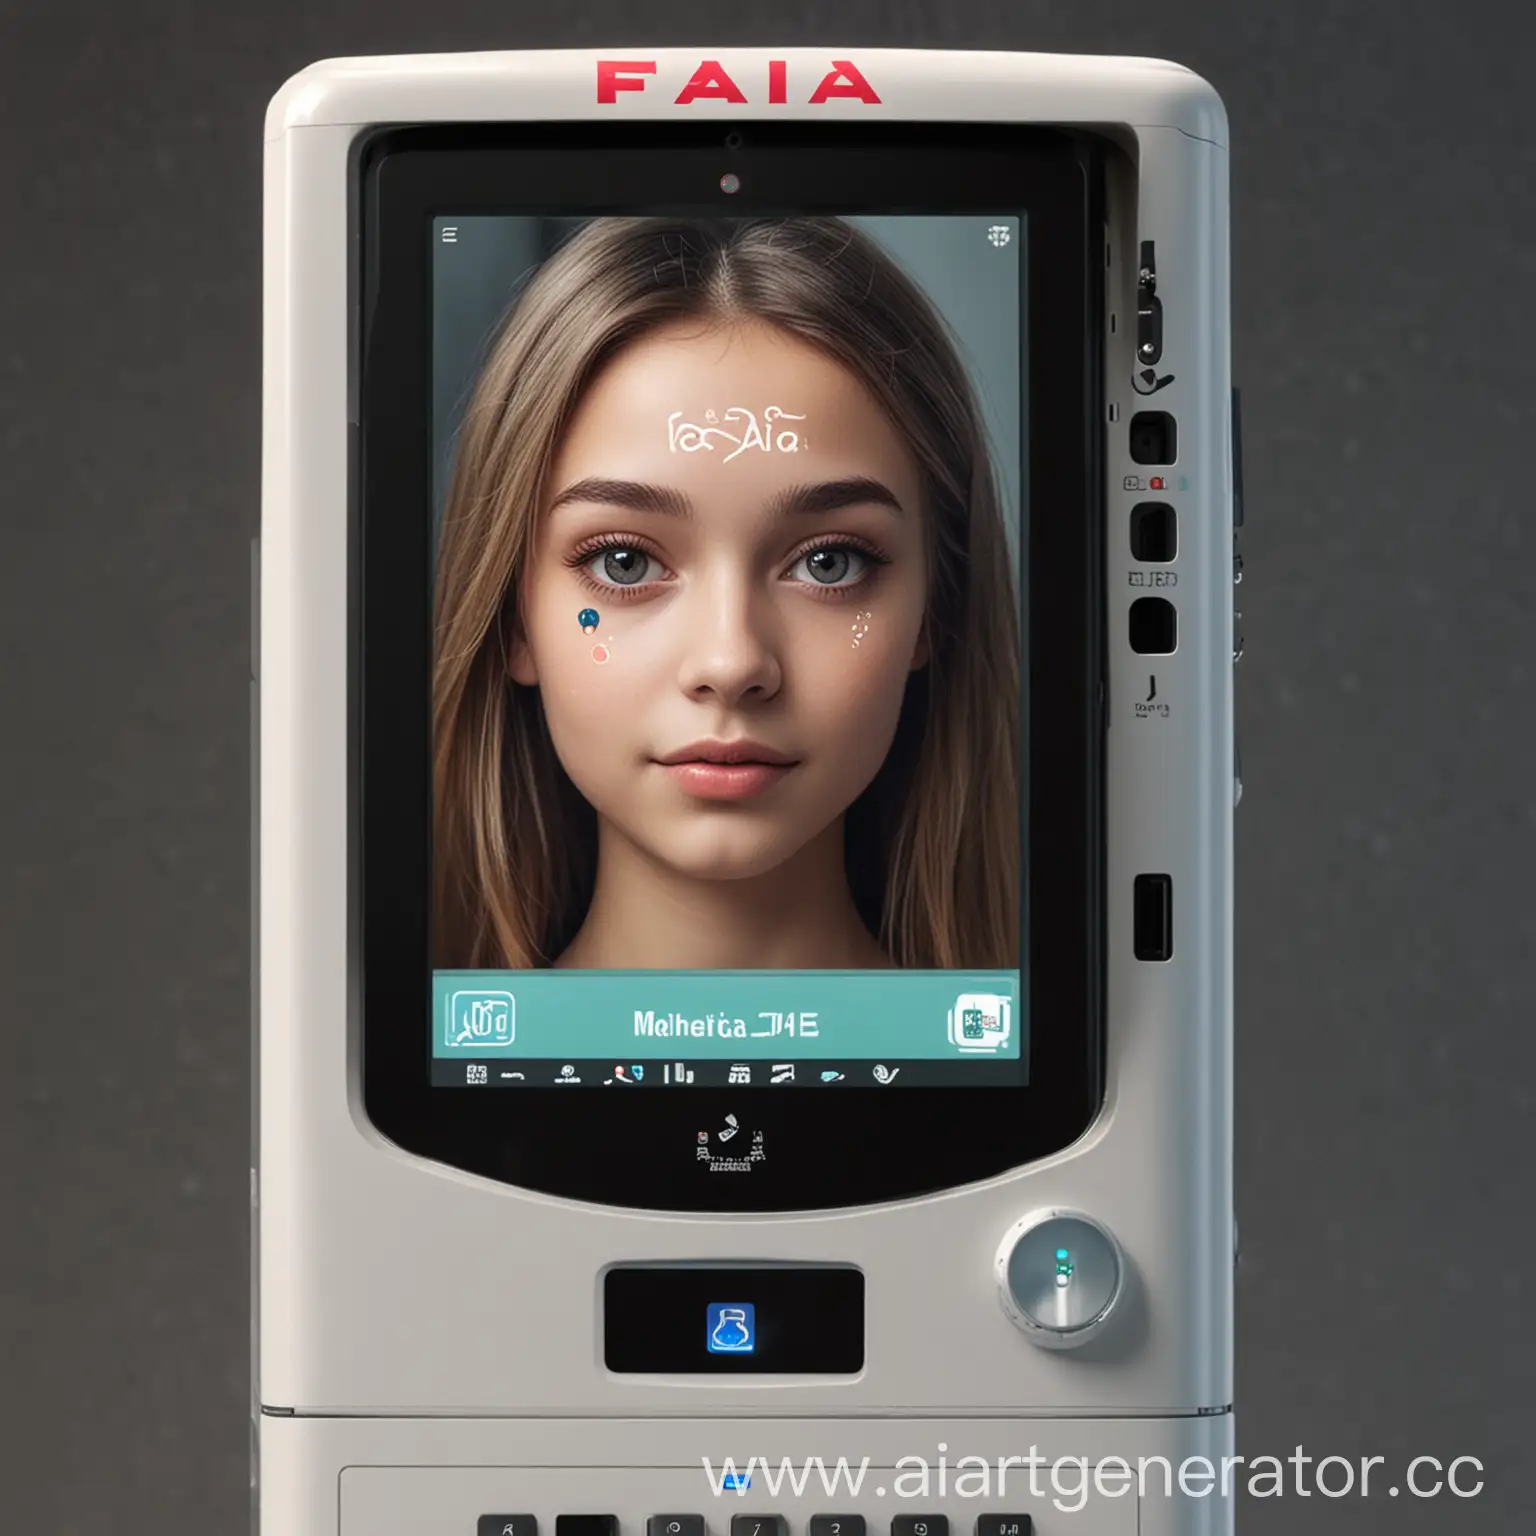 Вендинговый автомат по продаже лекарственных средств с надписью "FAIA" с экраном с эквайрингом с системой распознавания лиц. Кнопки "Спросите меня" на картинке лицо девушки из будущего